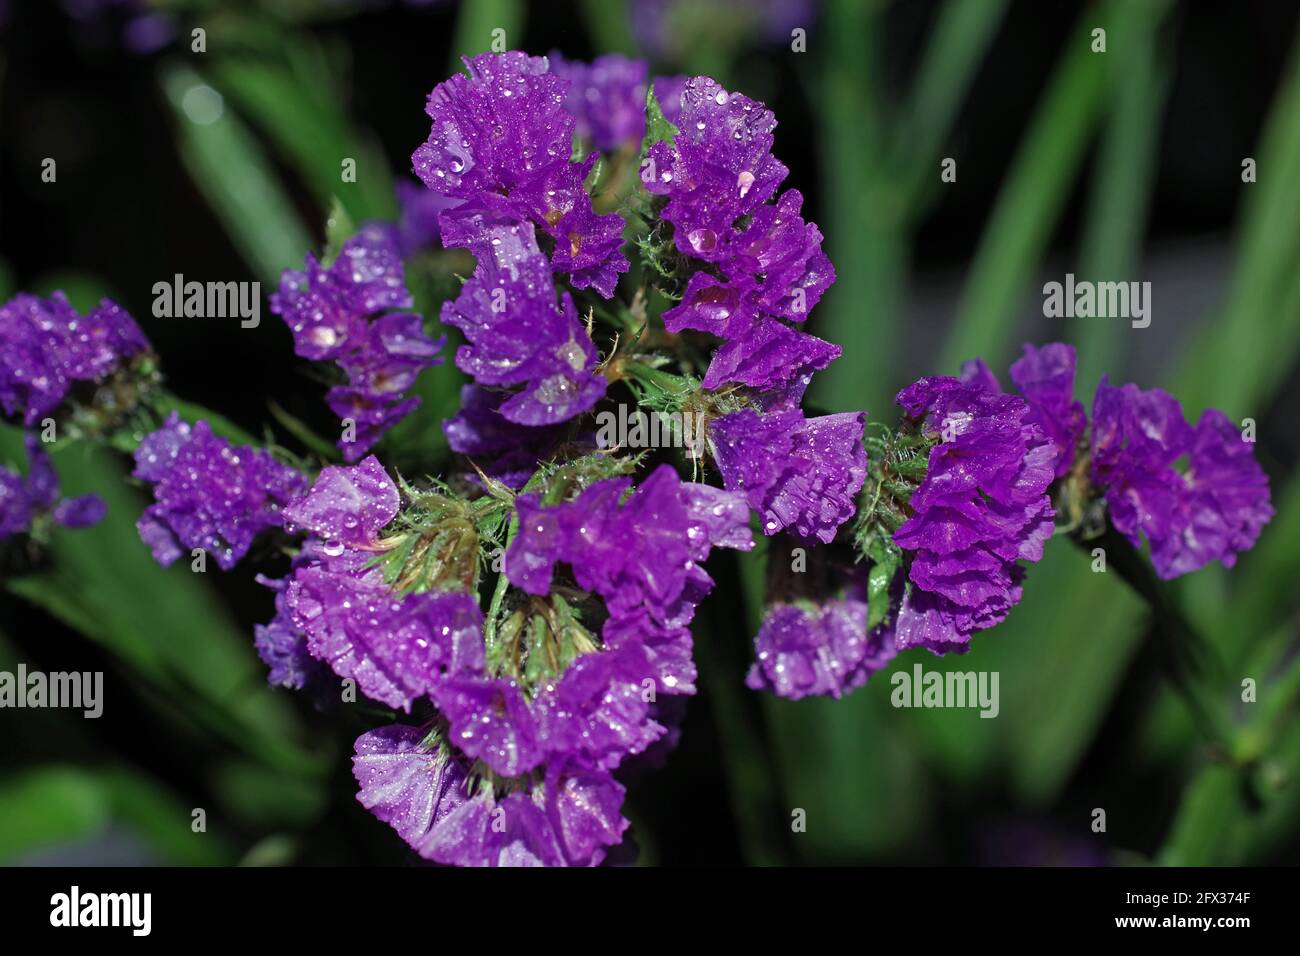 Statice purple (limonium sinuatum) flowering close-up Stock Photo